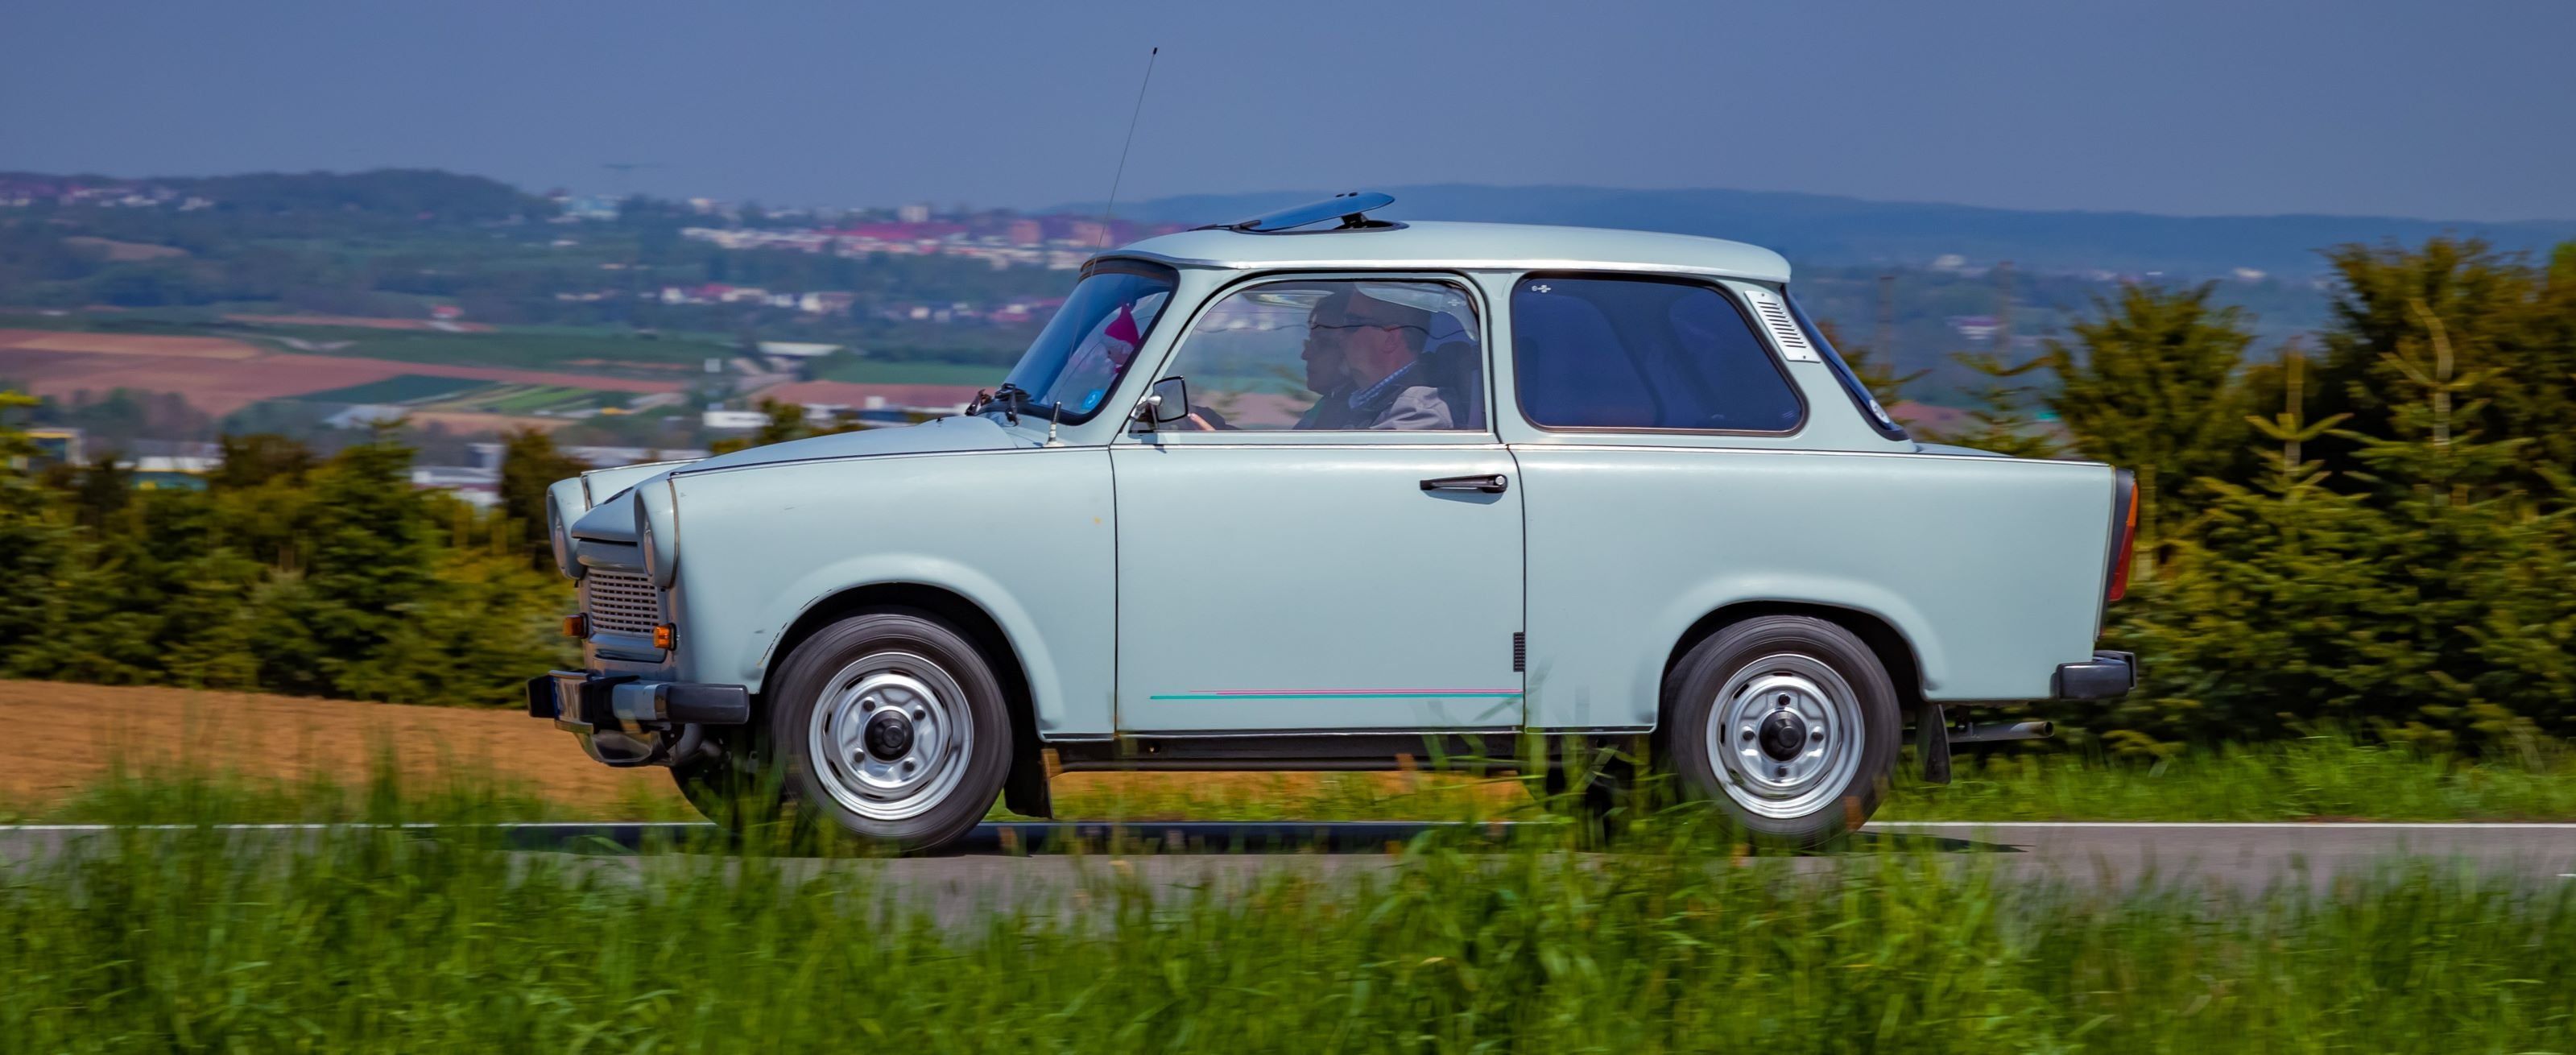 Majdnem 4 millió forintot kérnek egy újszerű Trabant 601-ért Magyarországon